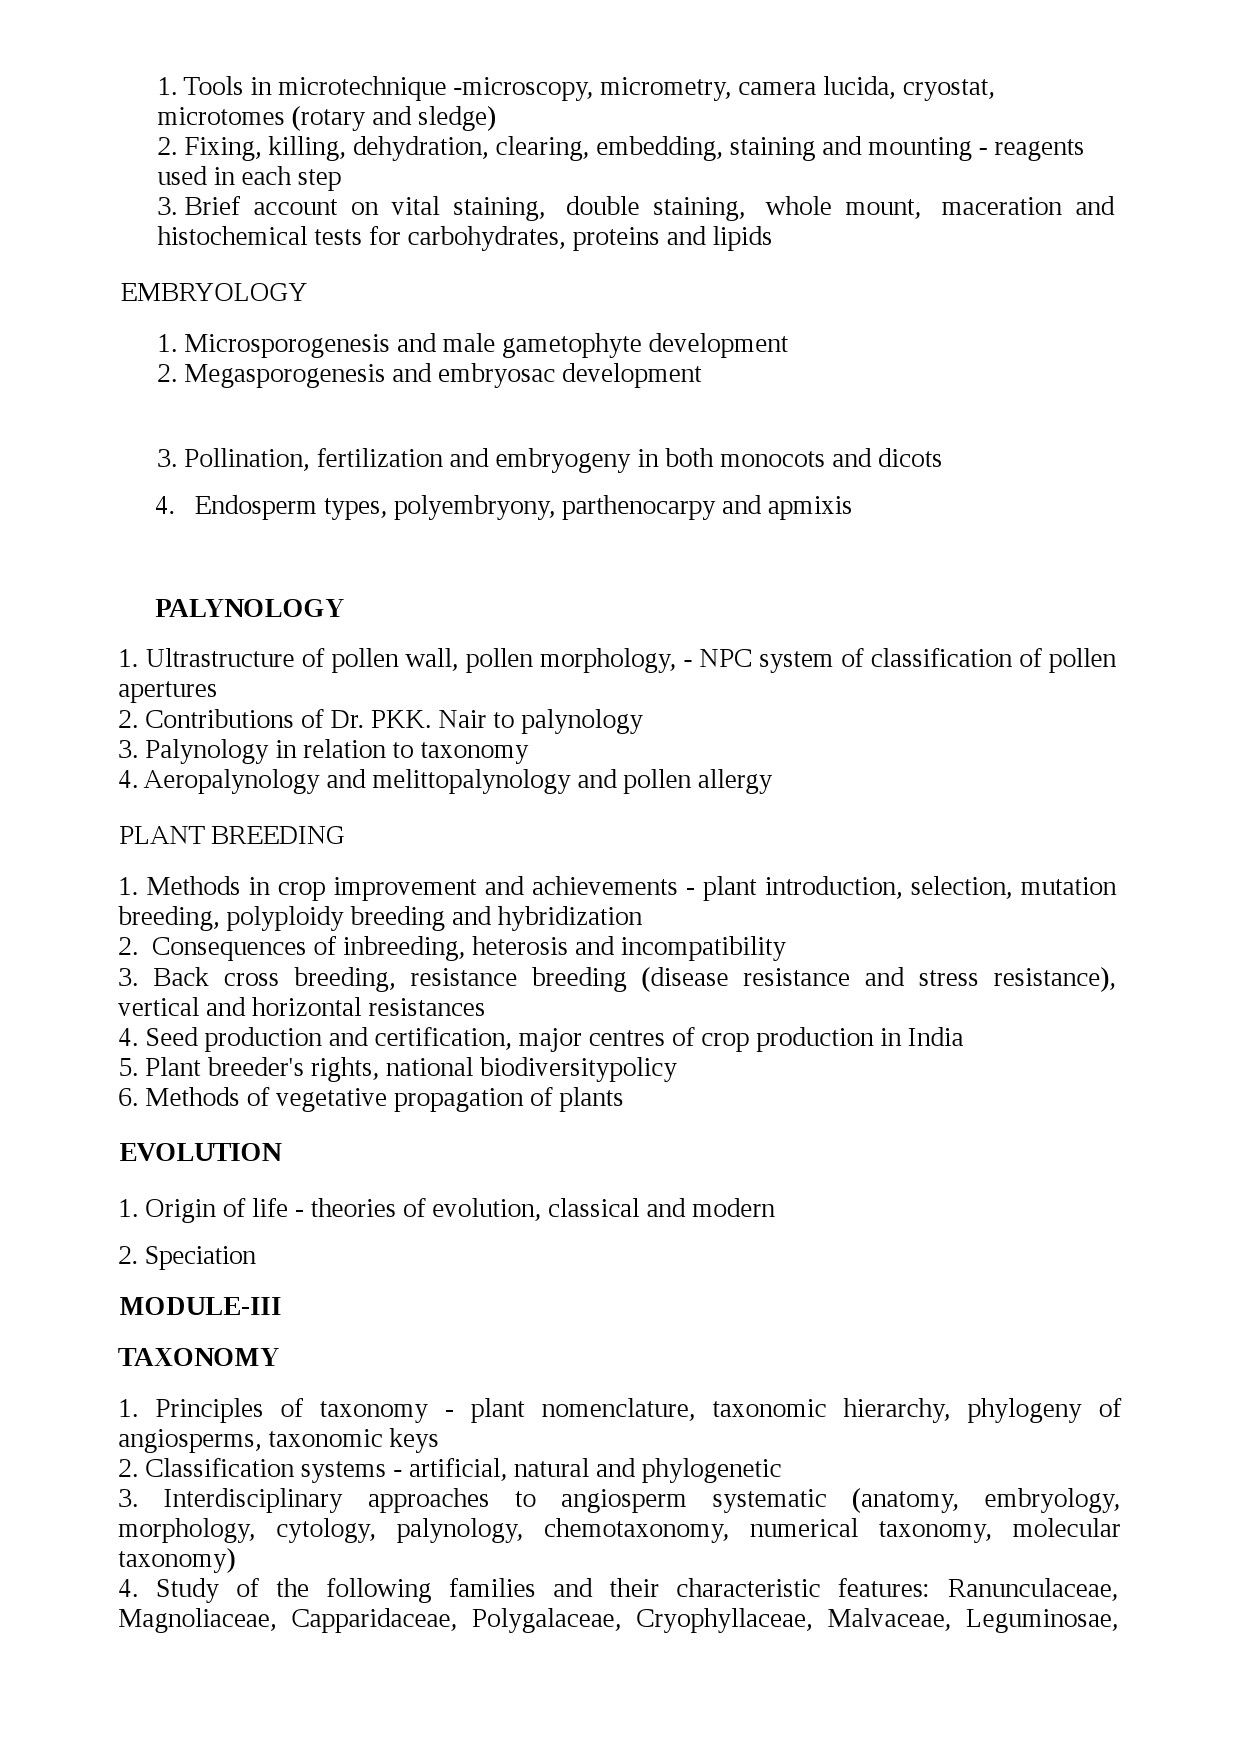 KPSC Syllabus 2021 Scientific Officer Biology - Notification Image 16